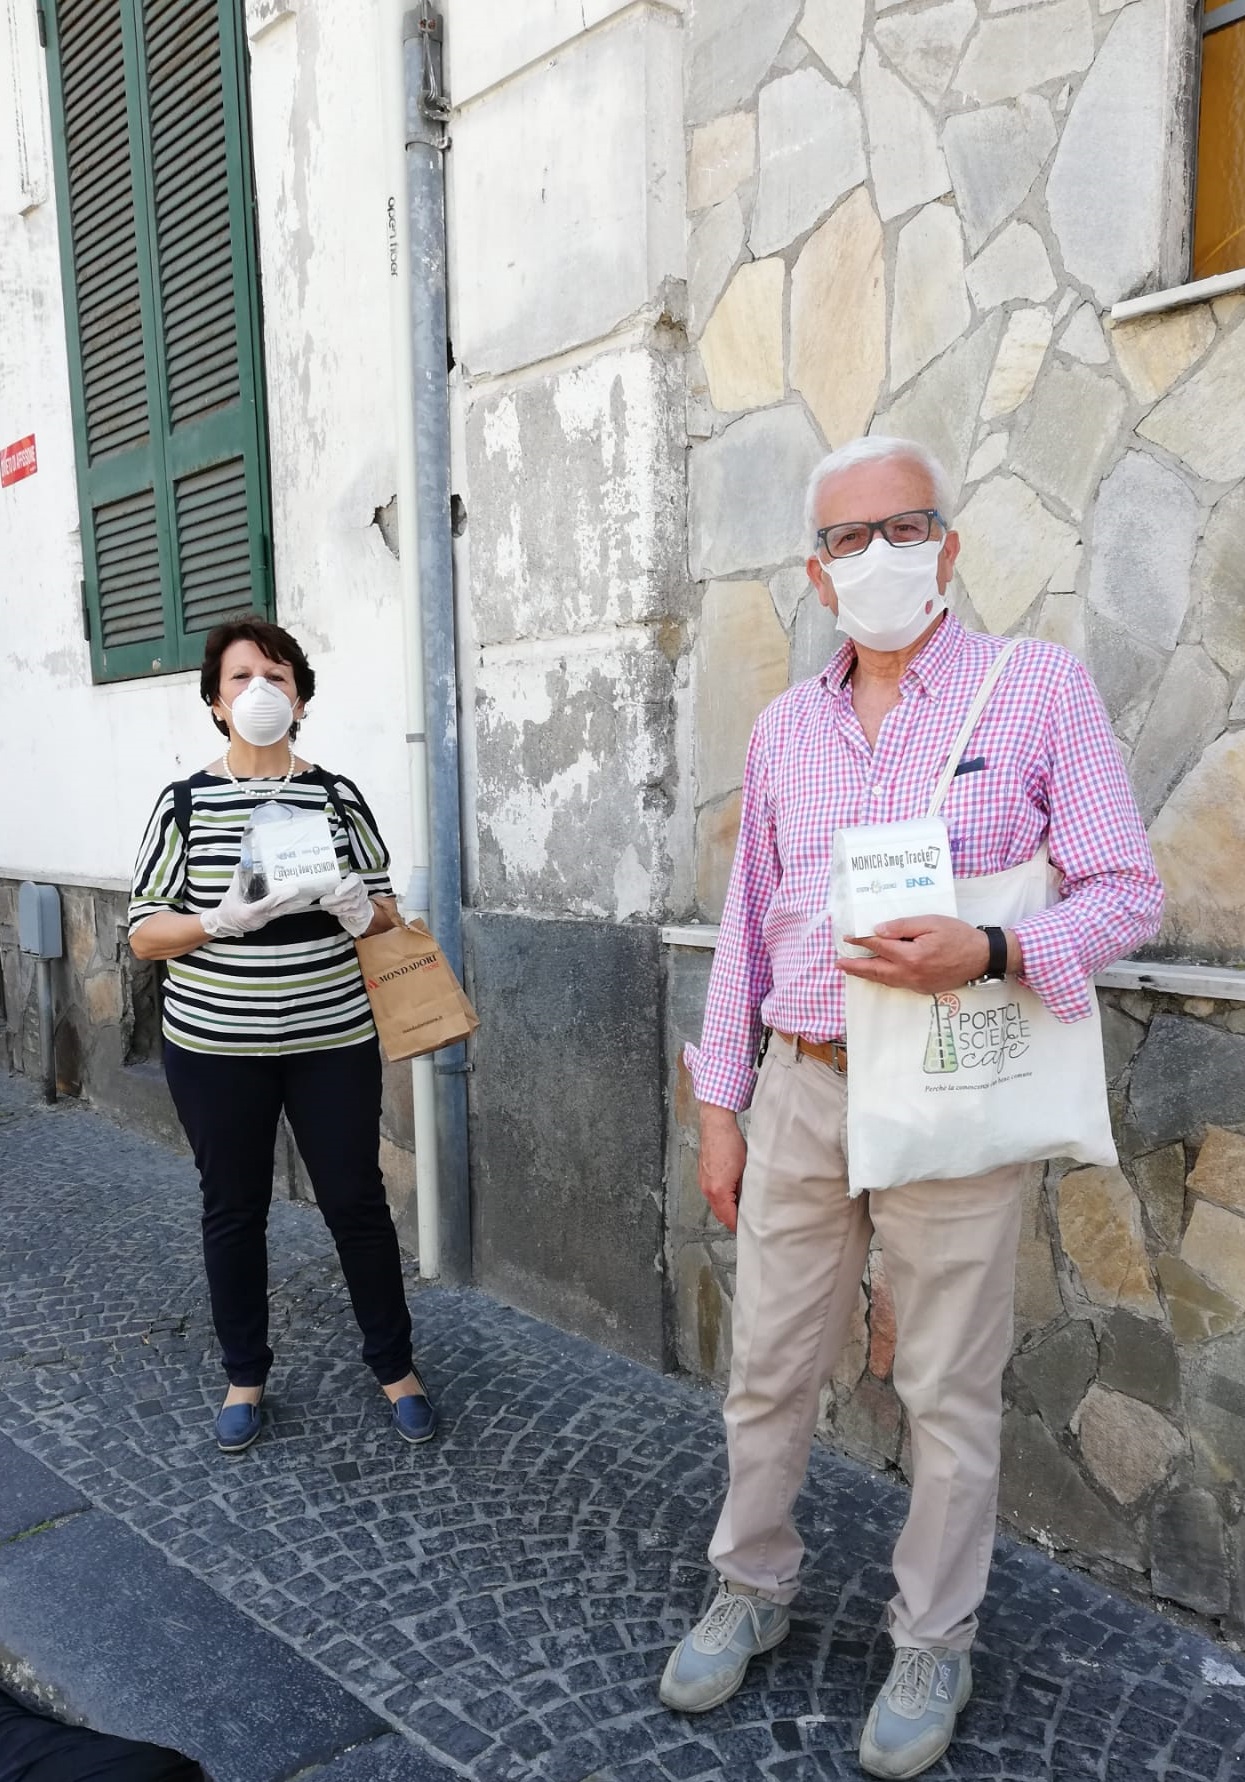 AIR-HERITAGE, a Portici i cittadini monitorano la qualità dell’aria